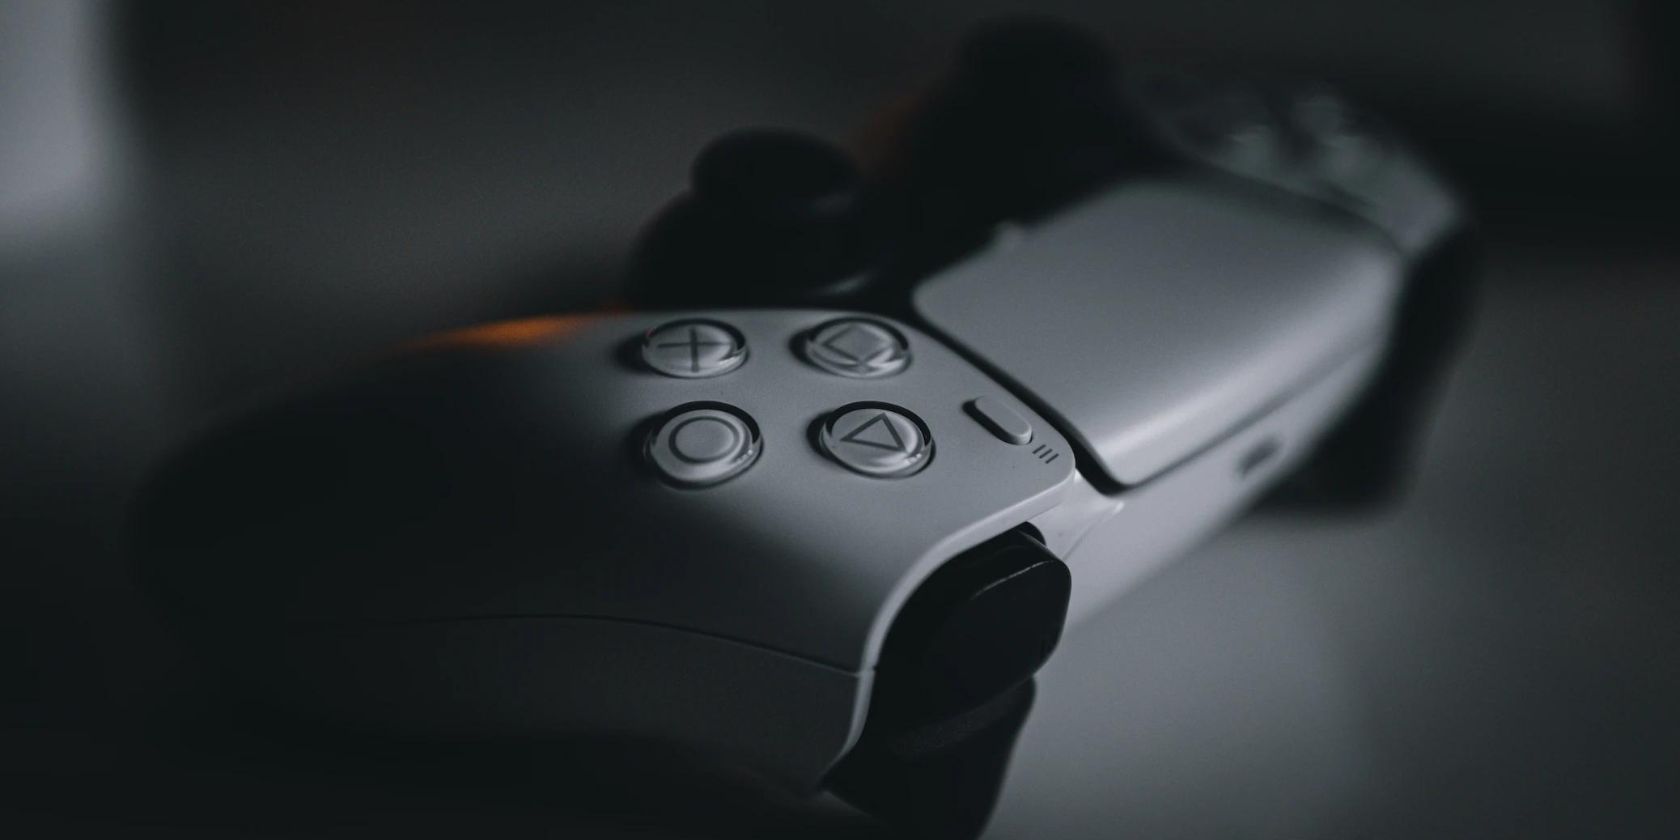 PlayStation 5 DualSense controller close-up 